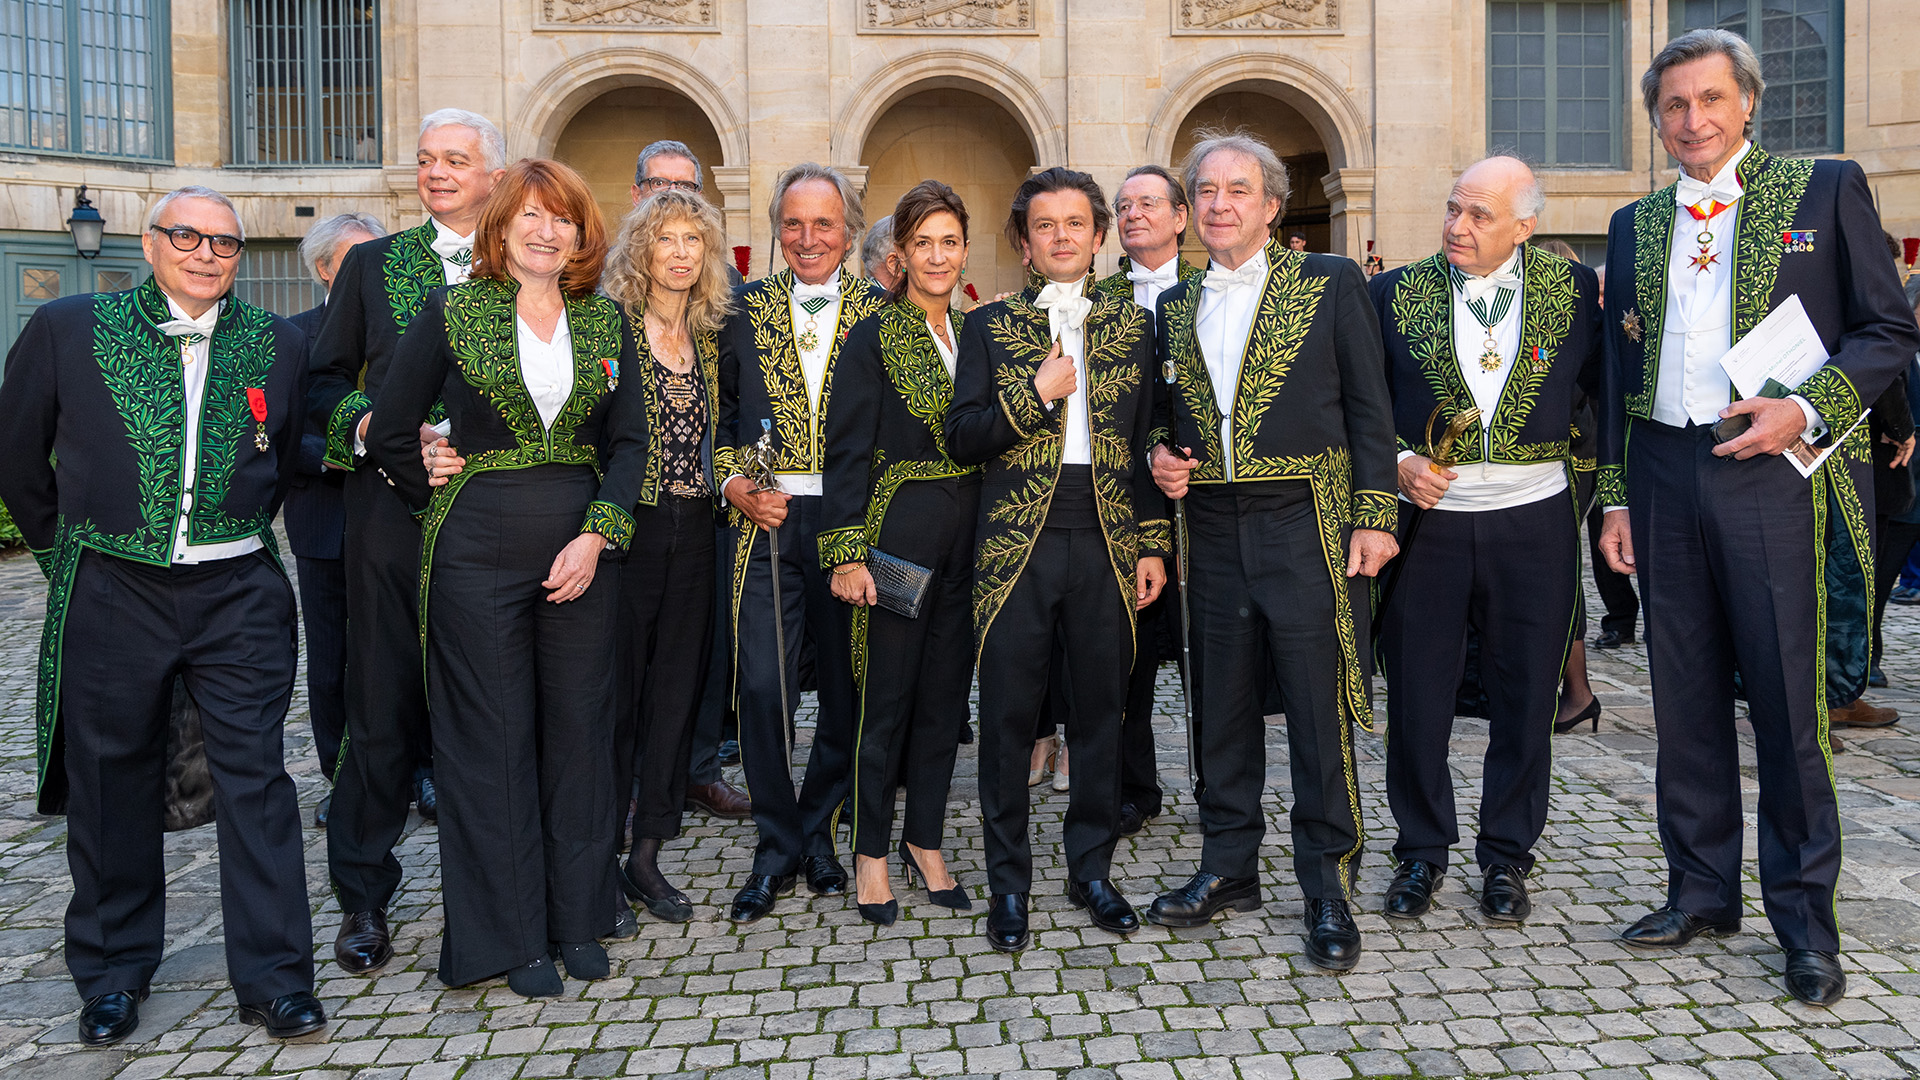 integrantes de la Academia Francesa con el traje puesto
(Photo by Luc Castel/Getty Images)